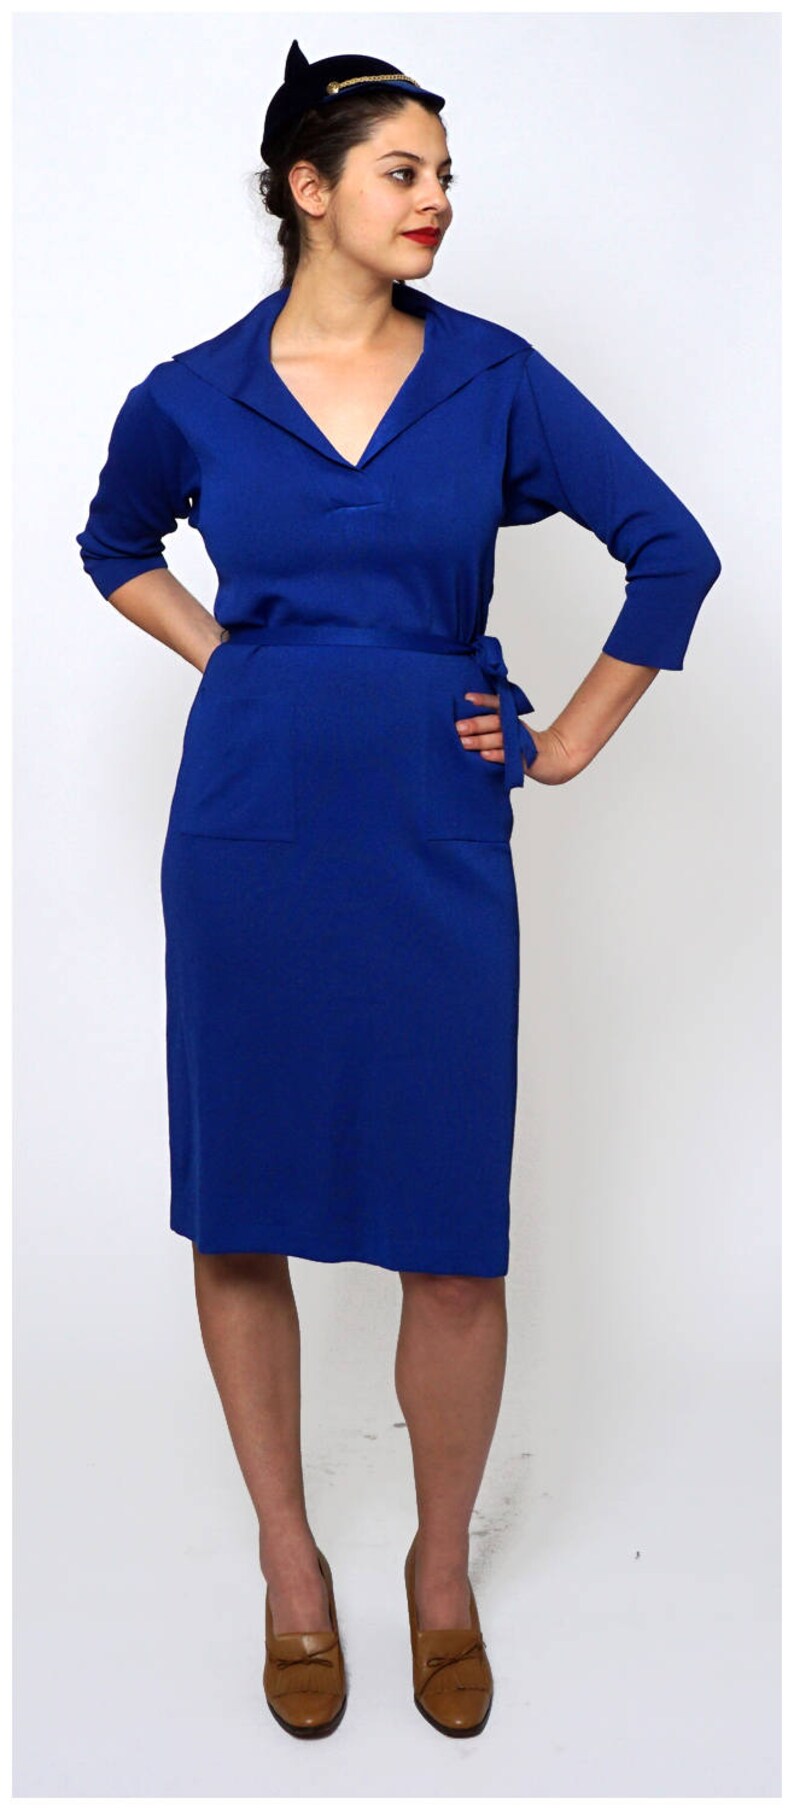 Vintage 1960s Royal Blue Knit Dress by Kimberly | Etsy